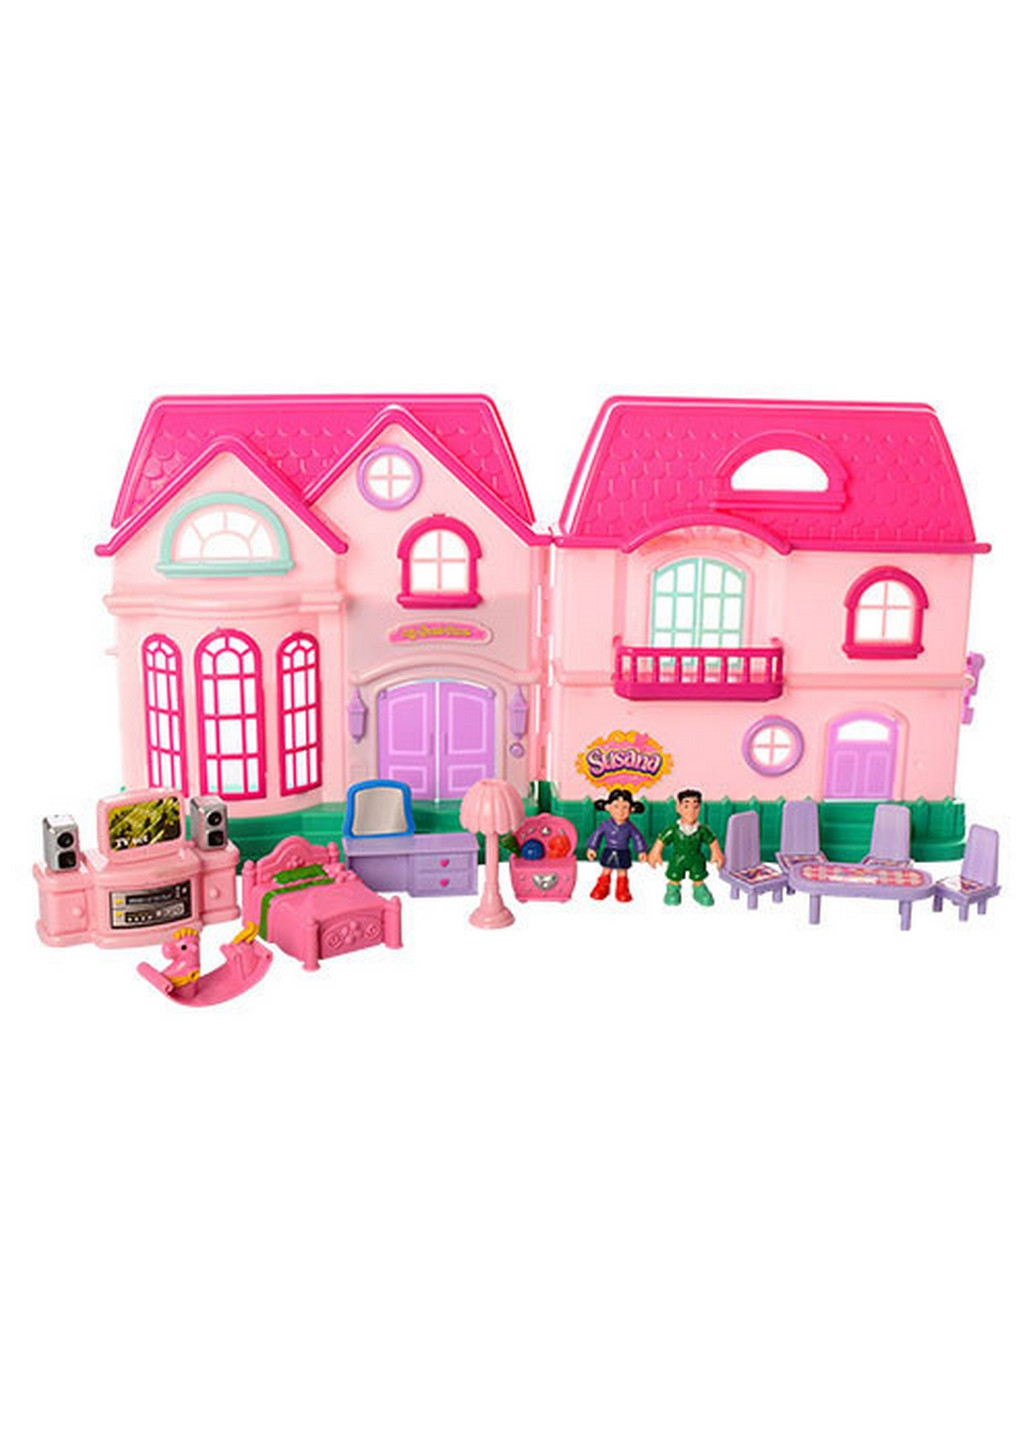 Дитячий ігровий будиночок для ляльок з ляльками та меблями 23,5х14х24 см Limo Toy (260498431)